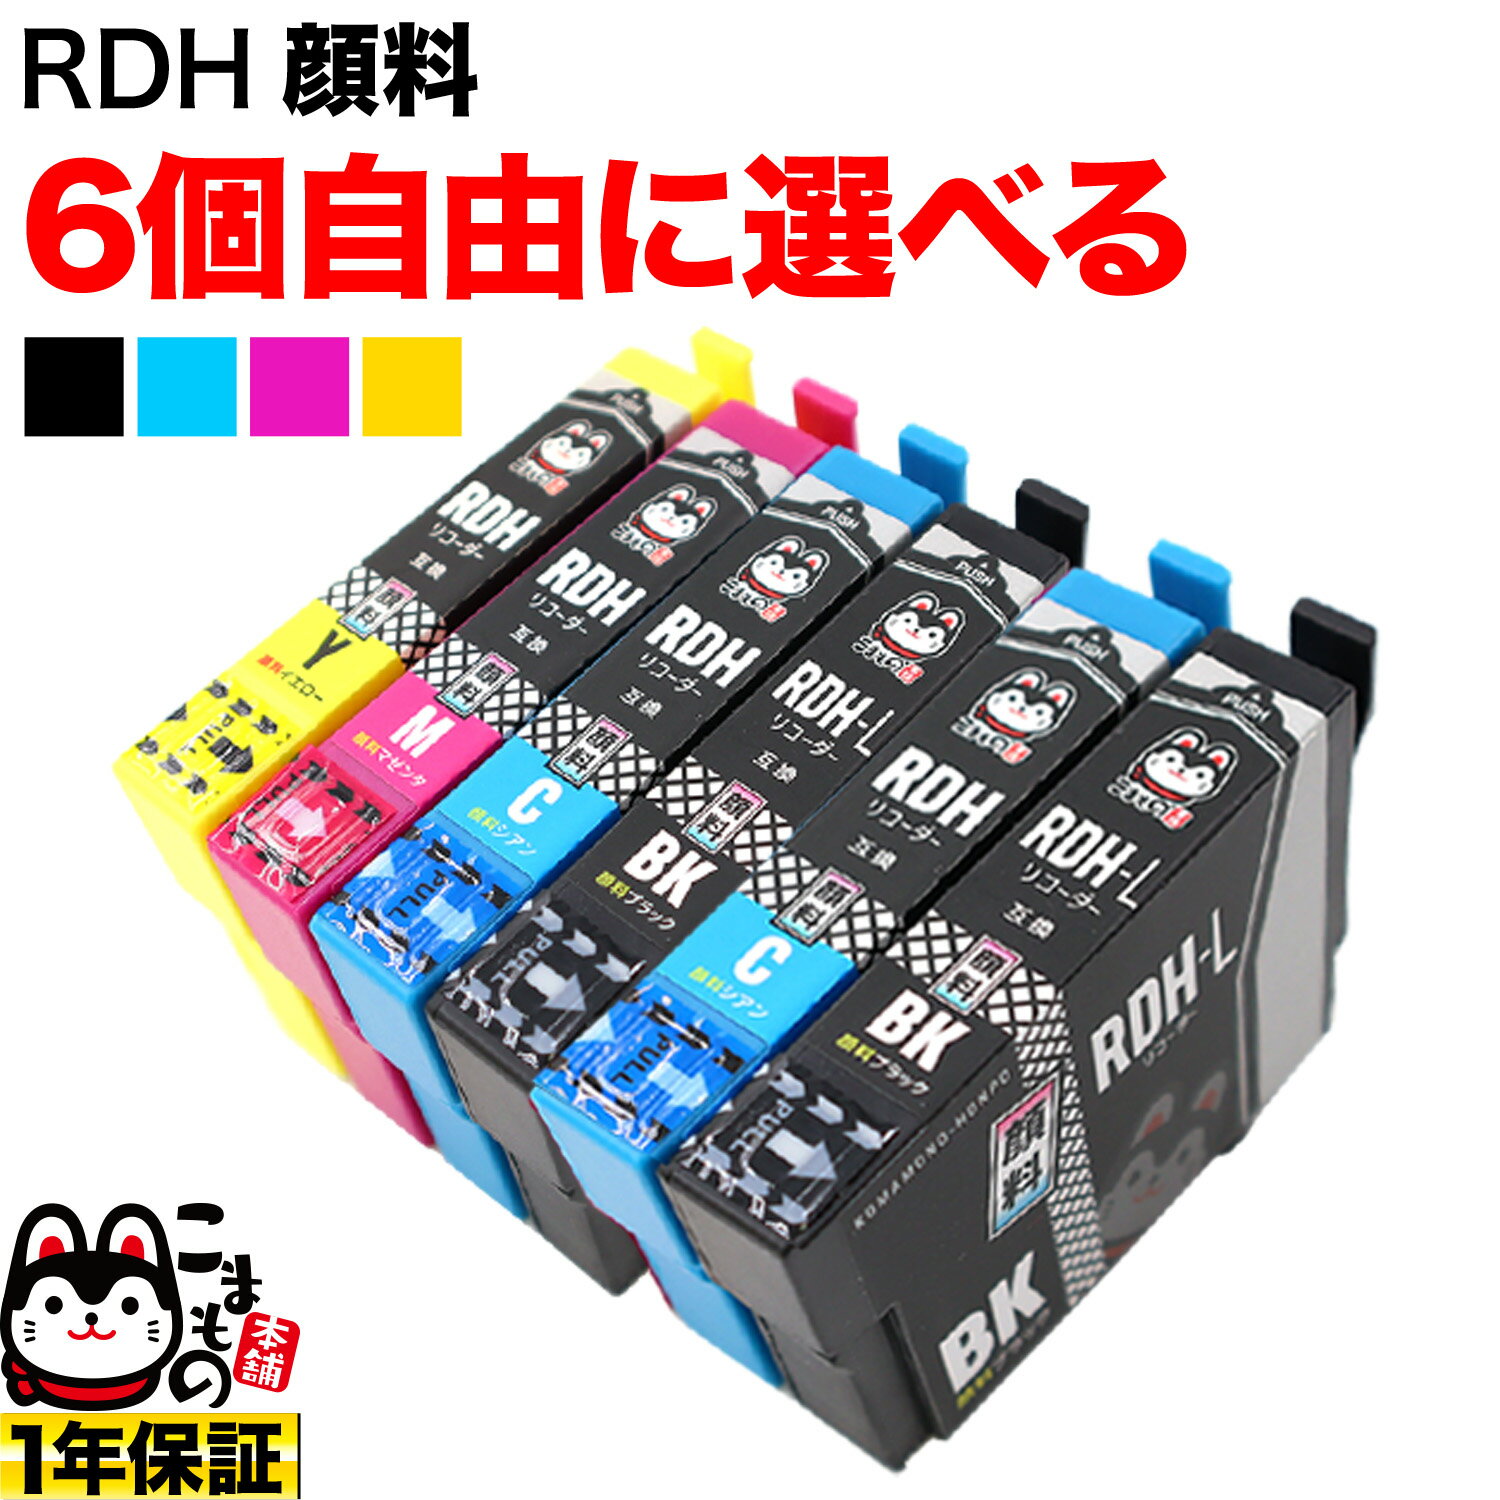 +1個おまけ RDH リコーダー エプソン用 互換インク 顔料 自由選択6+1個セット 増量BK フリーチョイス 選べる6+1個 PX-048A PX-049A